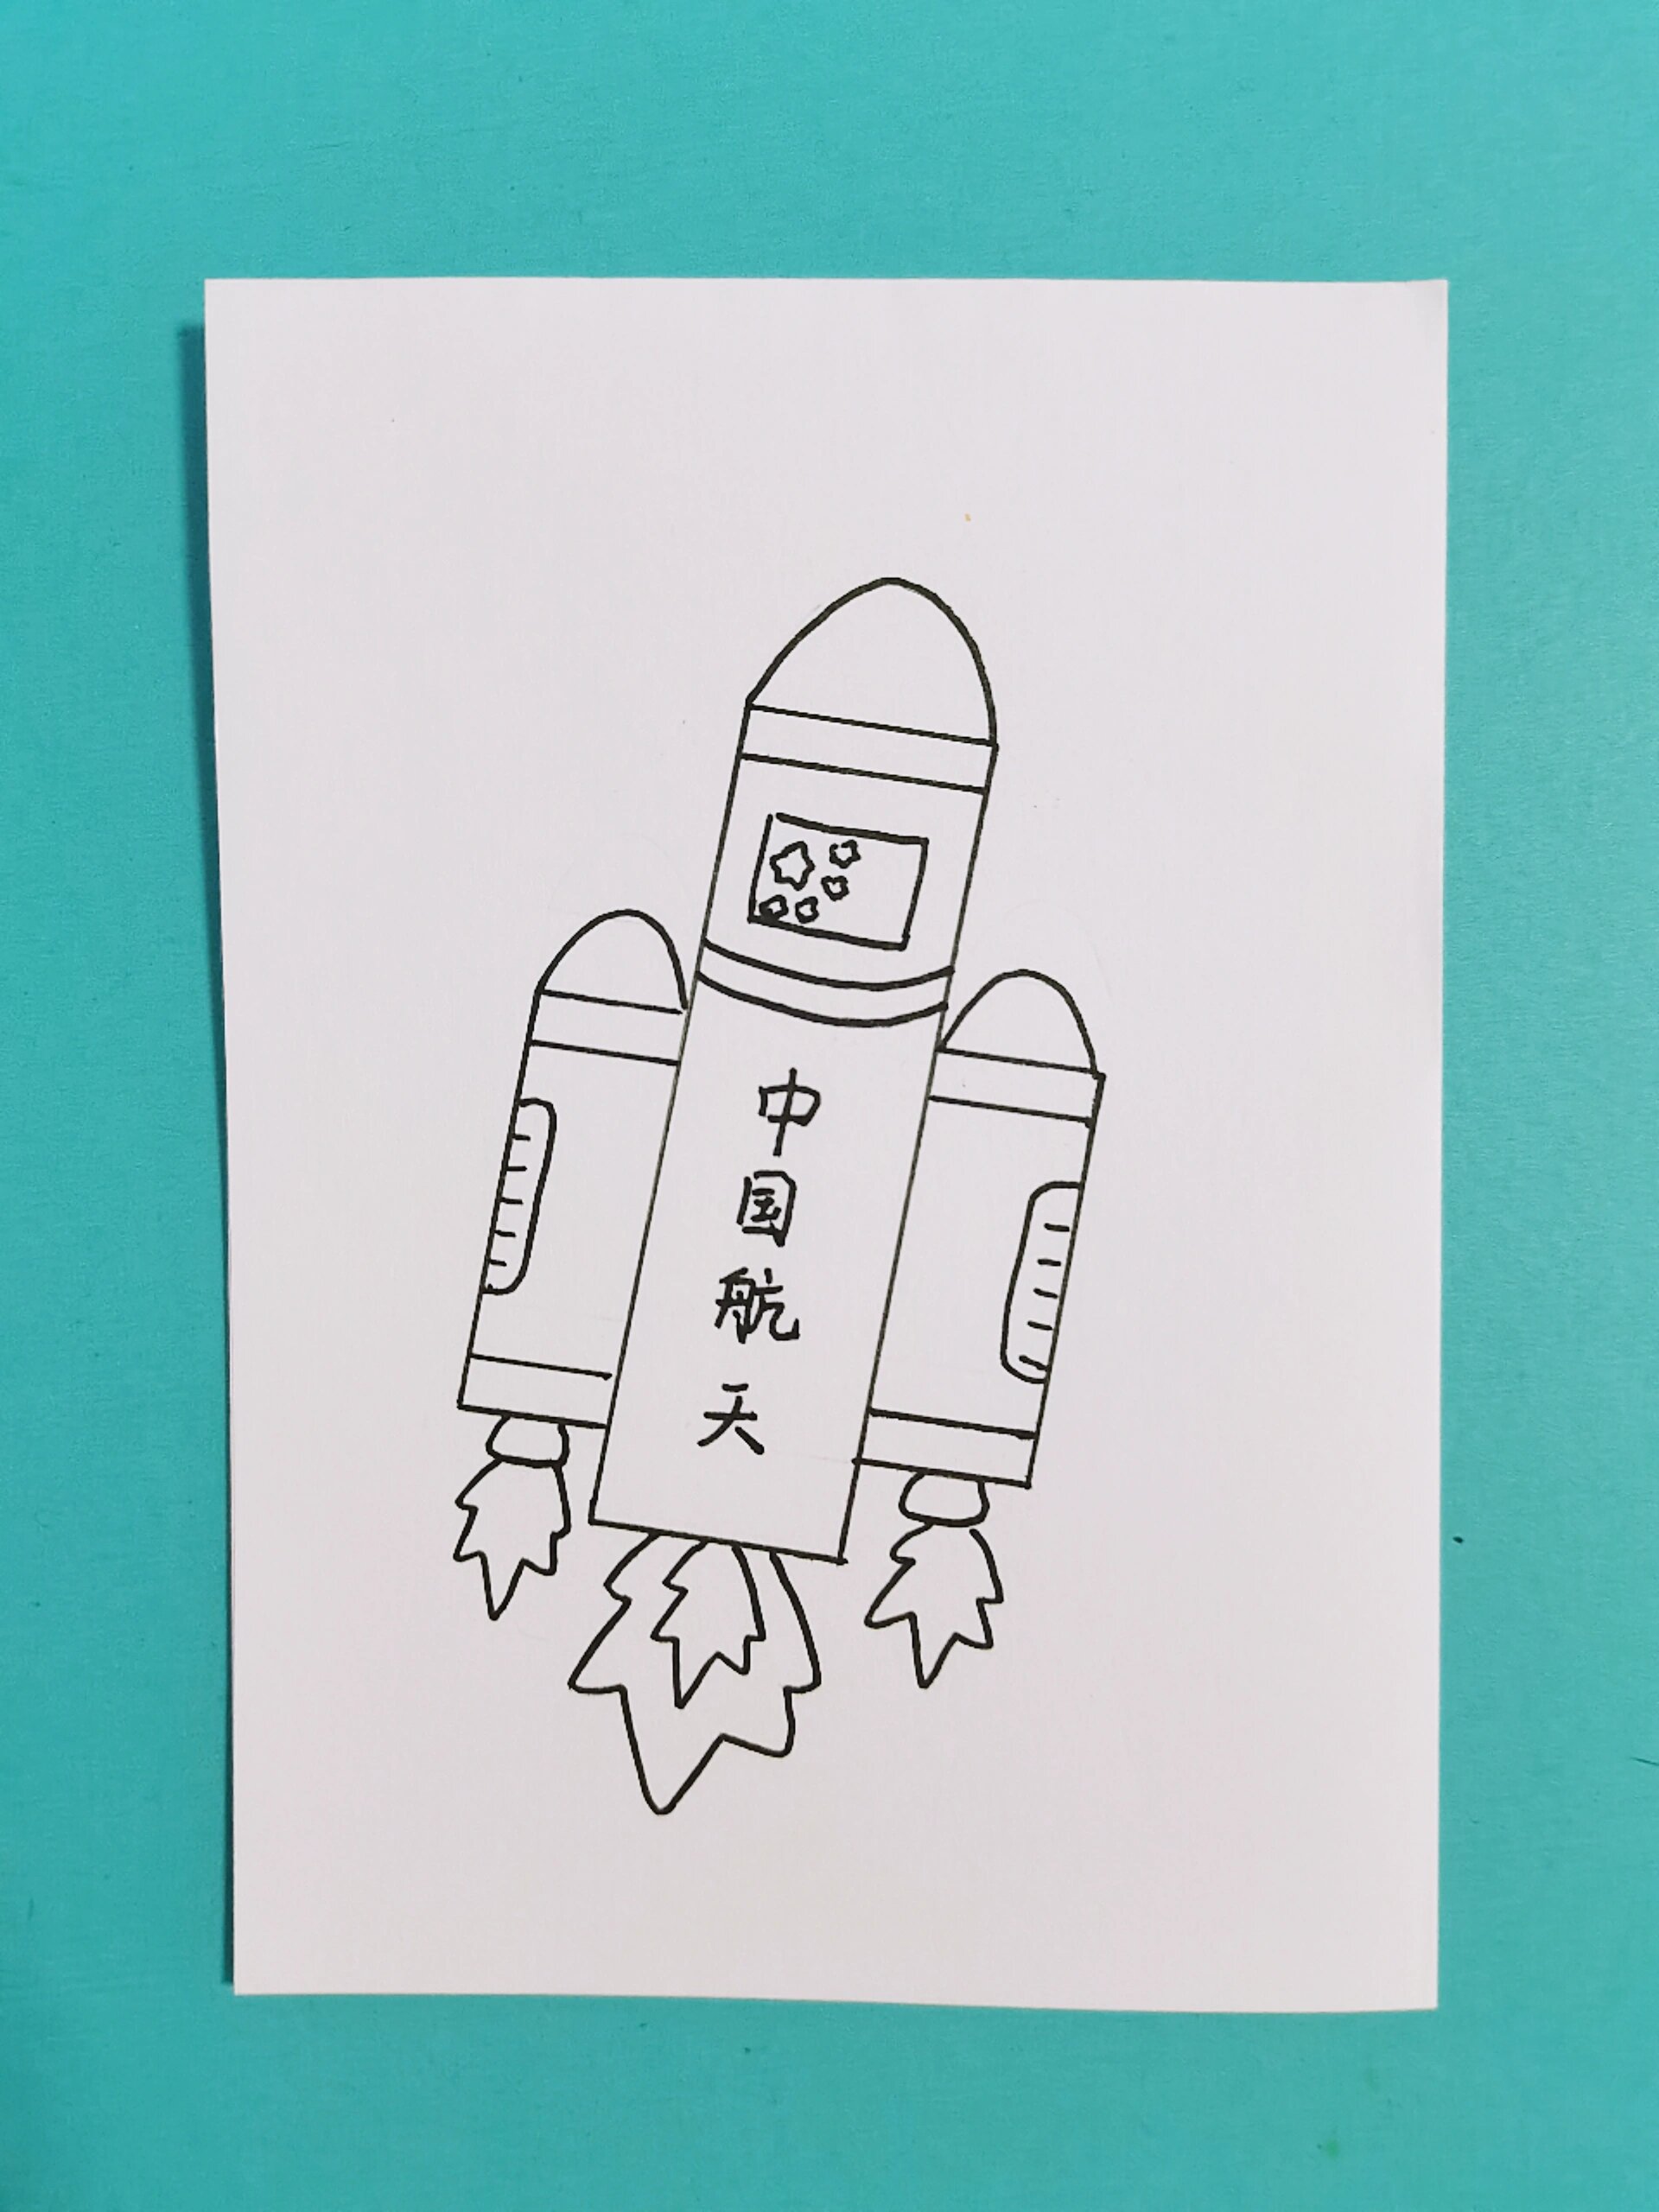 中国航天火箭主题简笔画